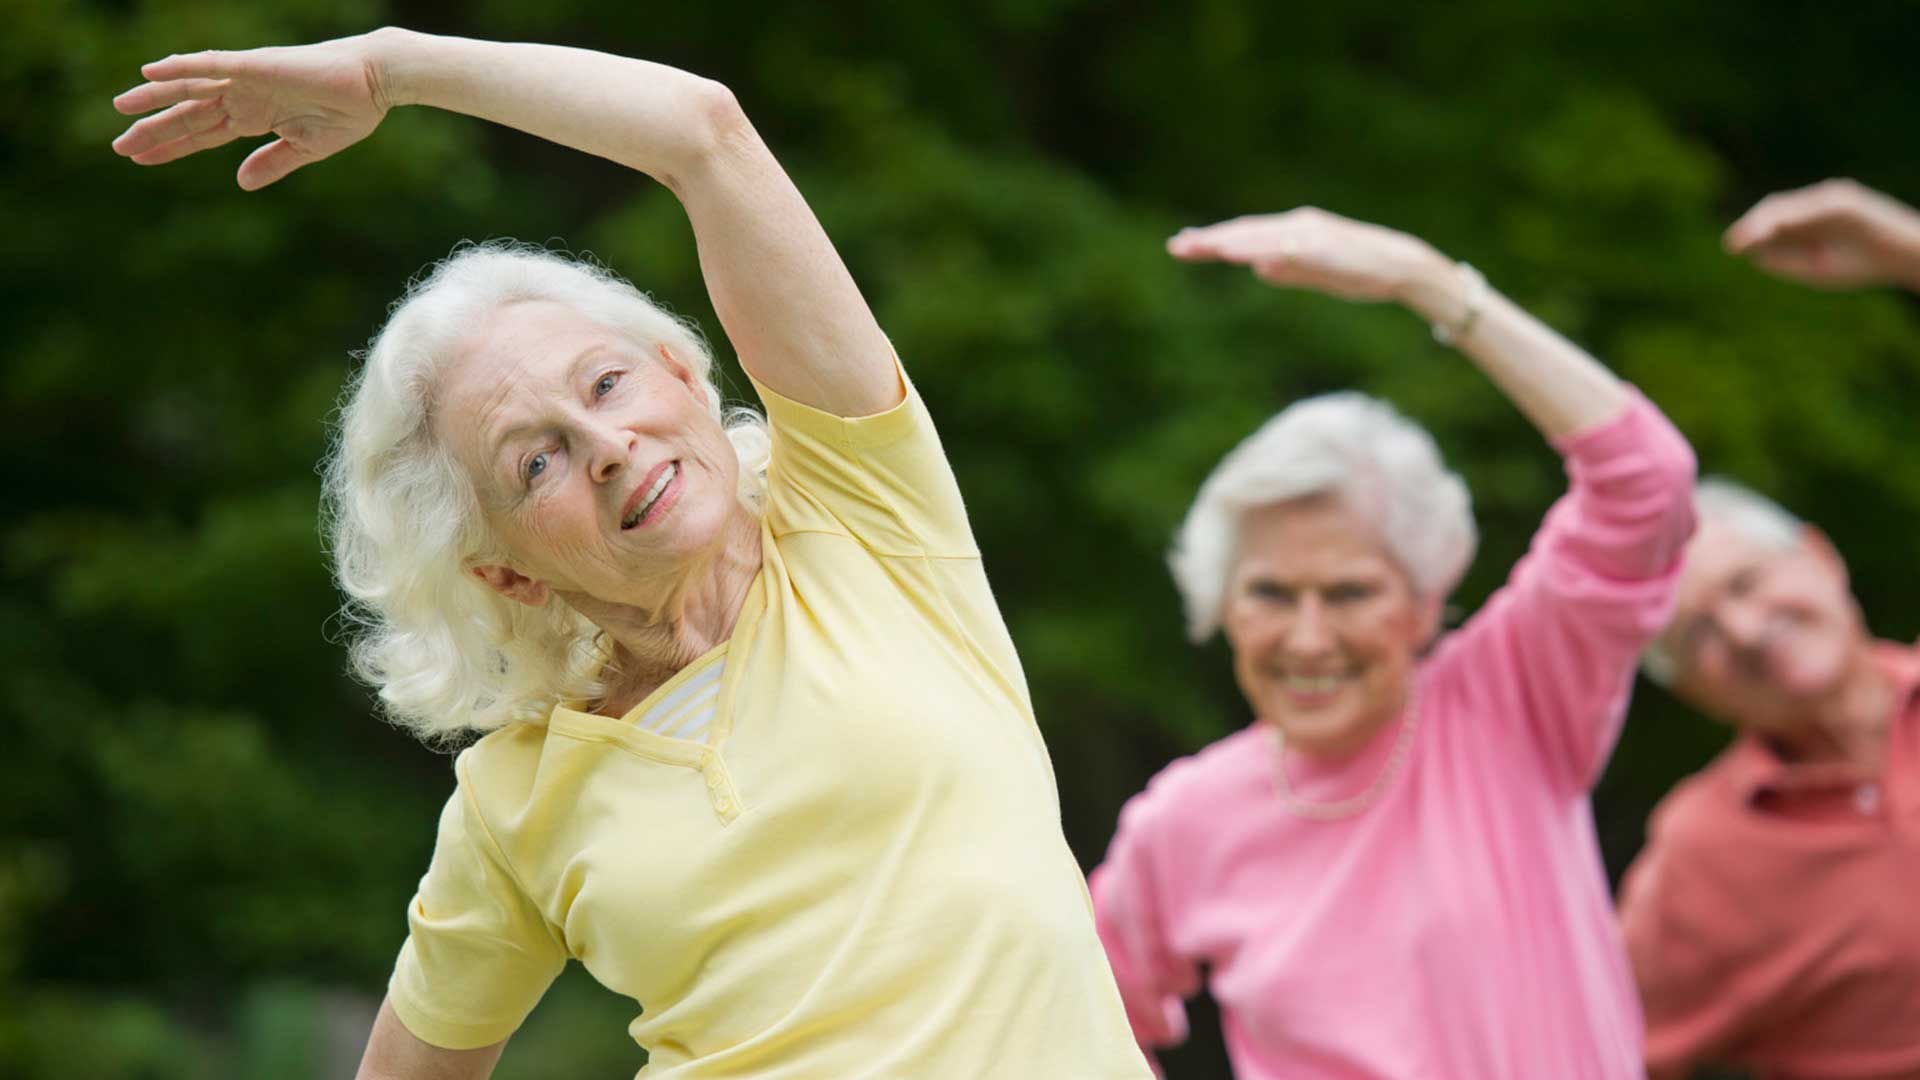 El ejercicio físico posee múltiples efectos beneficiosos directos e indirectos que mejoran el estado de las arterias y del corazón: reduce la inflamación, mejora los niveles de colesterol, los fenómenos trombóticos, entre otros